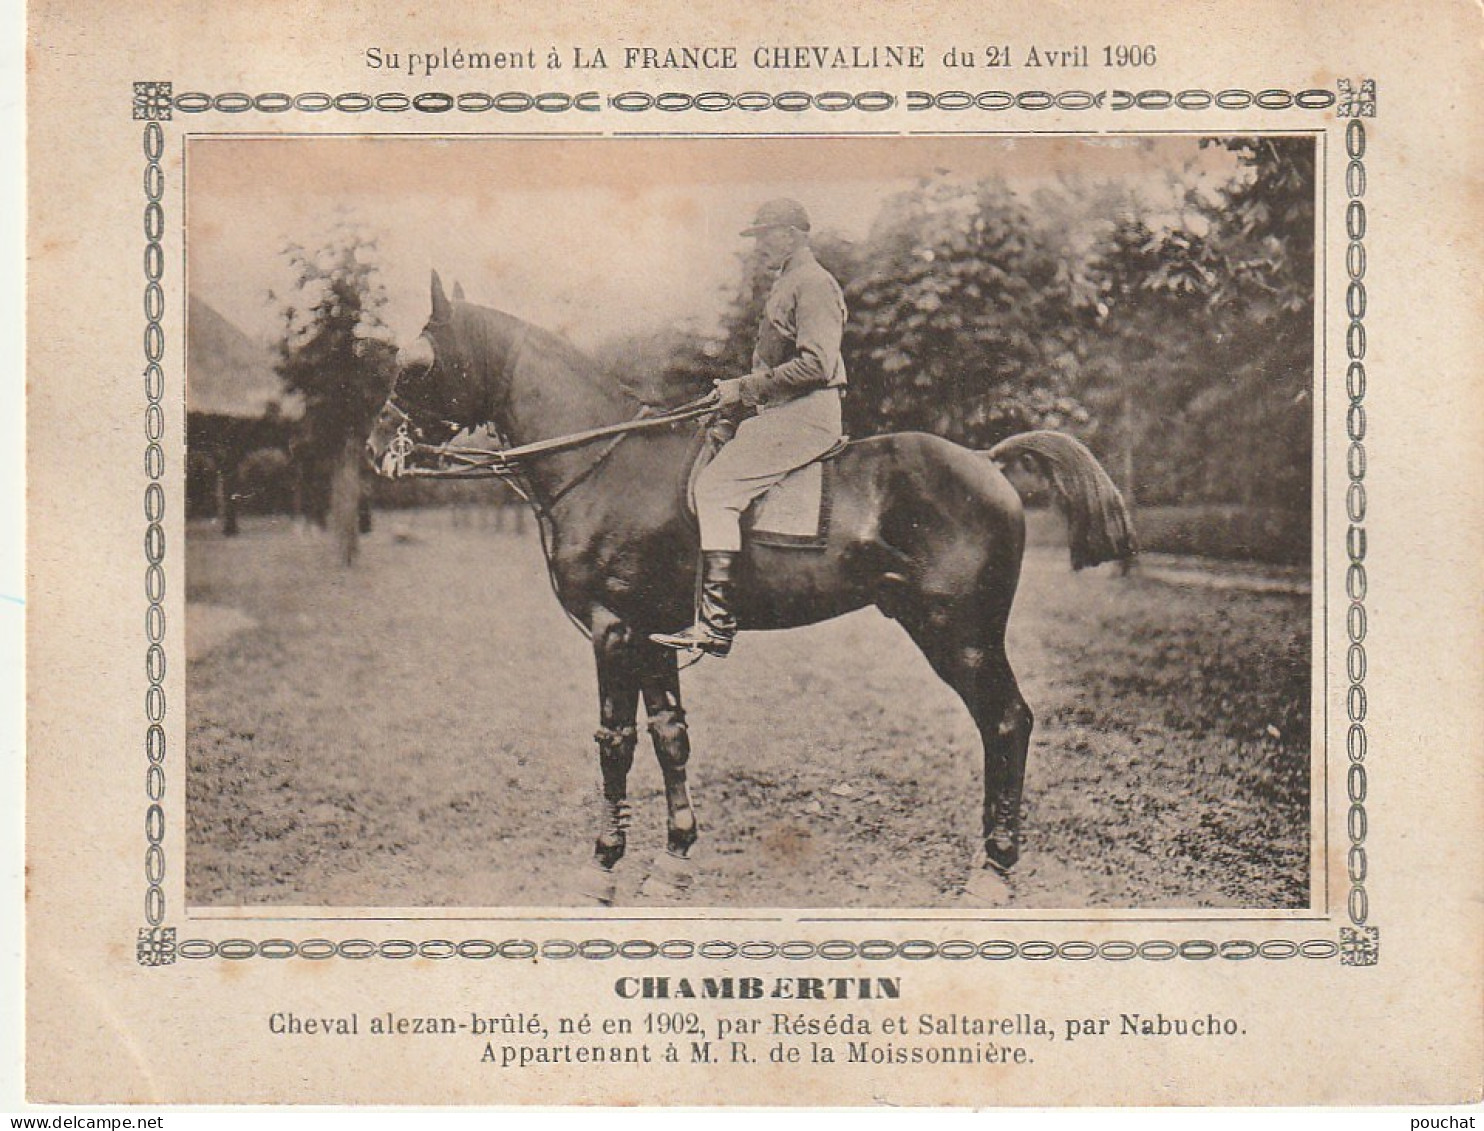 AA+ - " CHAMBERTIN " - CHEVAL ALEZAN BRULE APPARTENANT A M. R. DE LA MOISSONNIERE - SUPPL. FRANCE CHEVALINE AVRIL 1906 - Horse Show